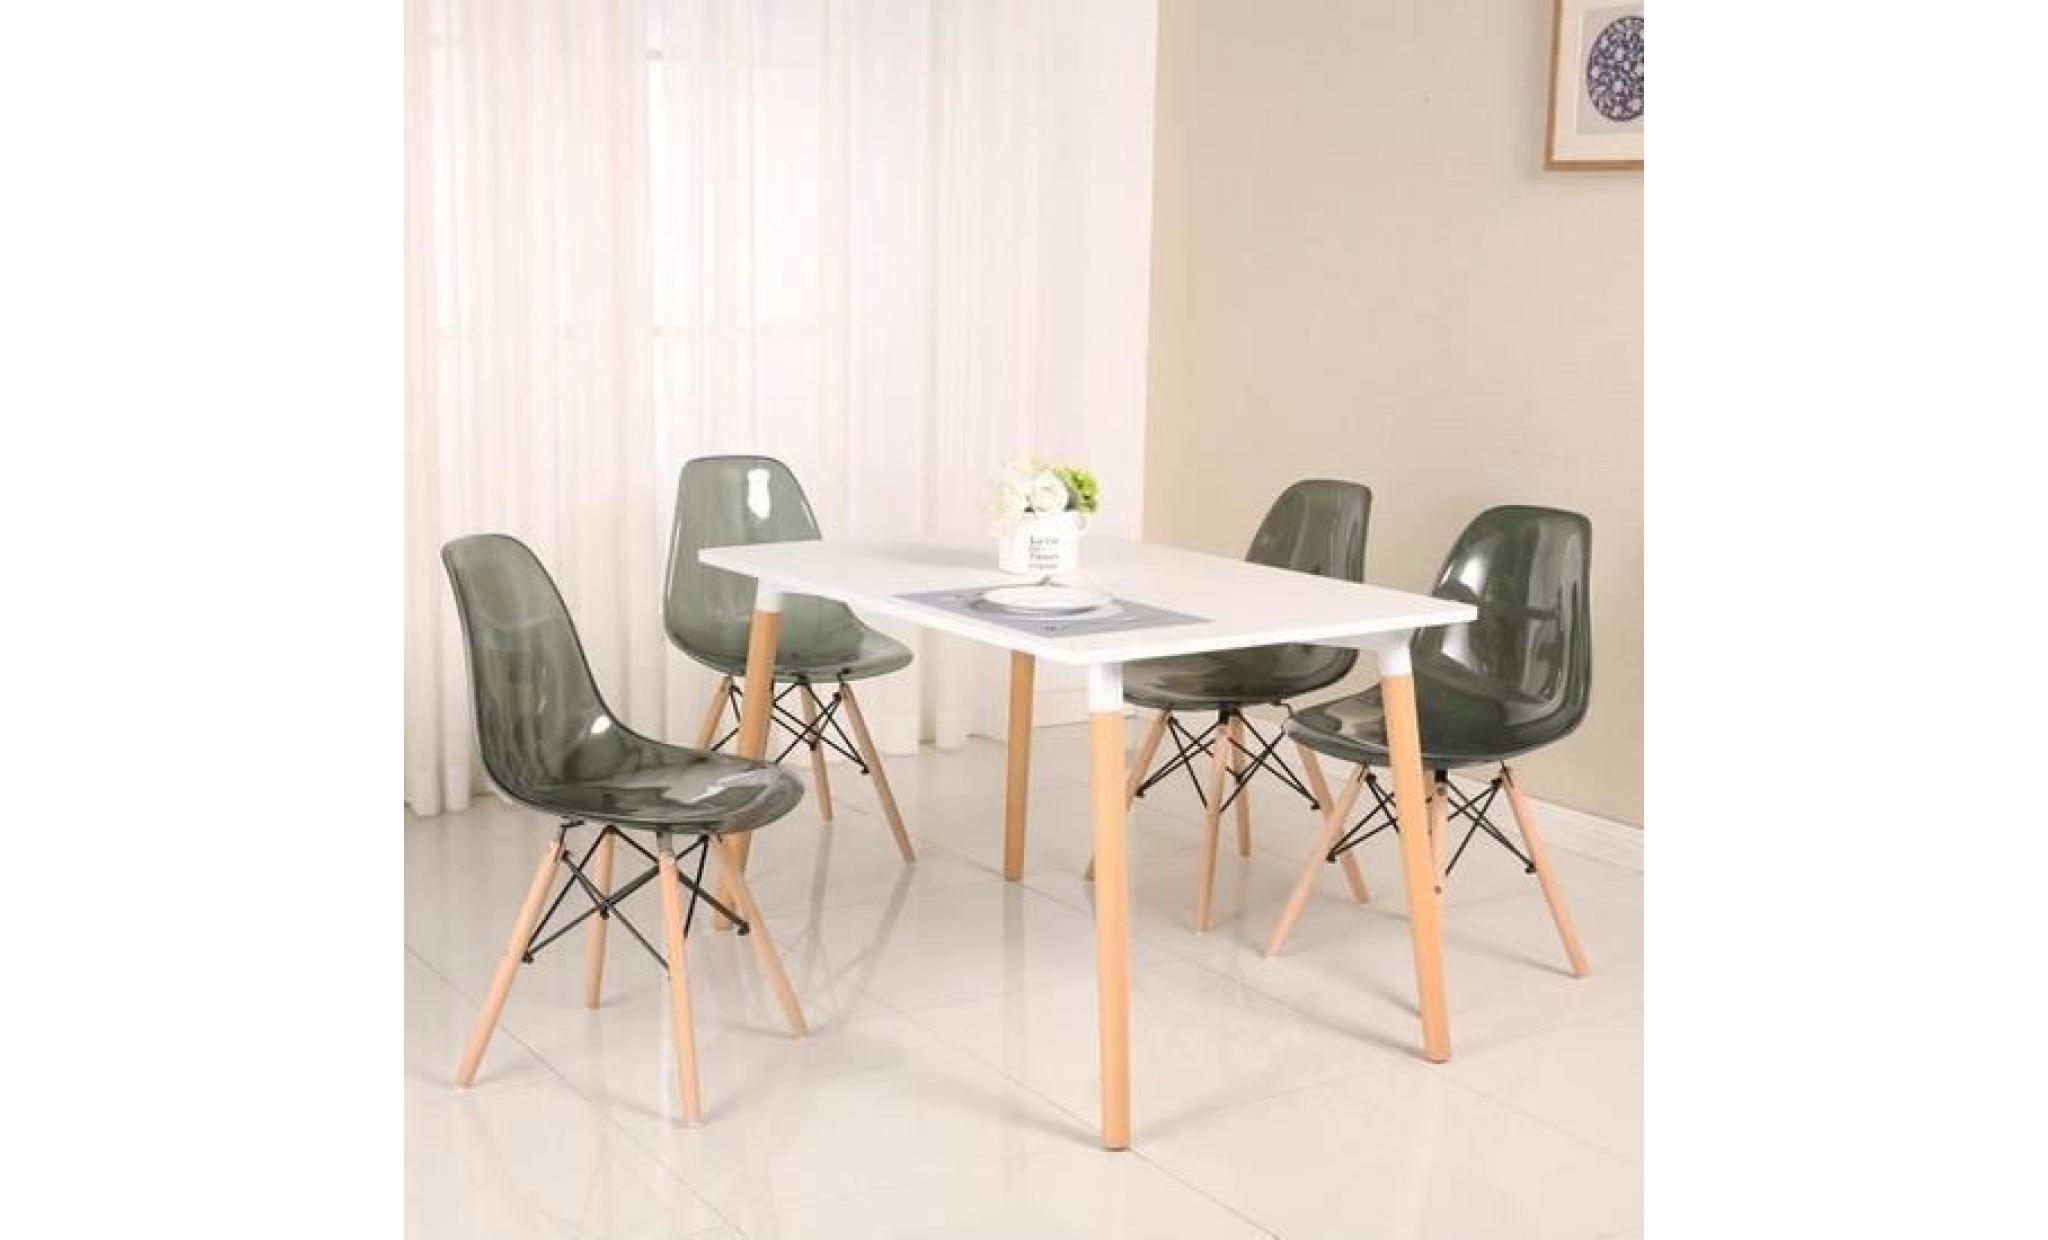 dora lot de 4 chaises gris transparent design tendance salle à manger chaises de cuisine chaises scandinaves chaise en plastique pas cher